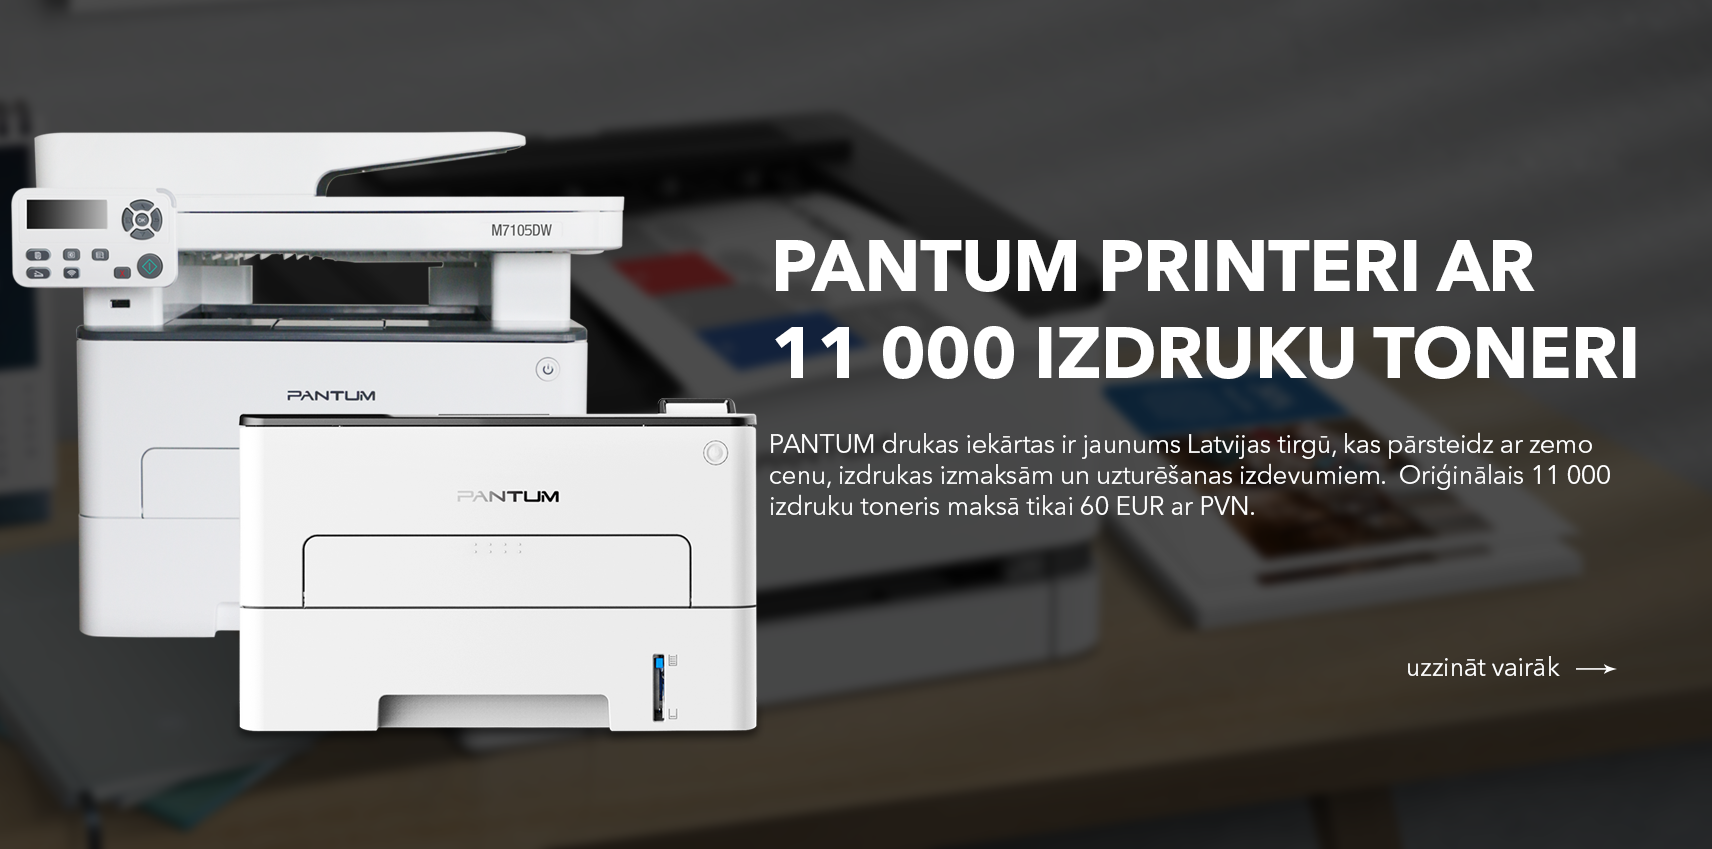 PANTUM printeri ar 11 000 izdruku toneri